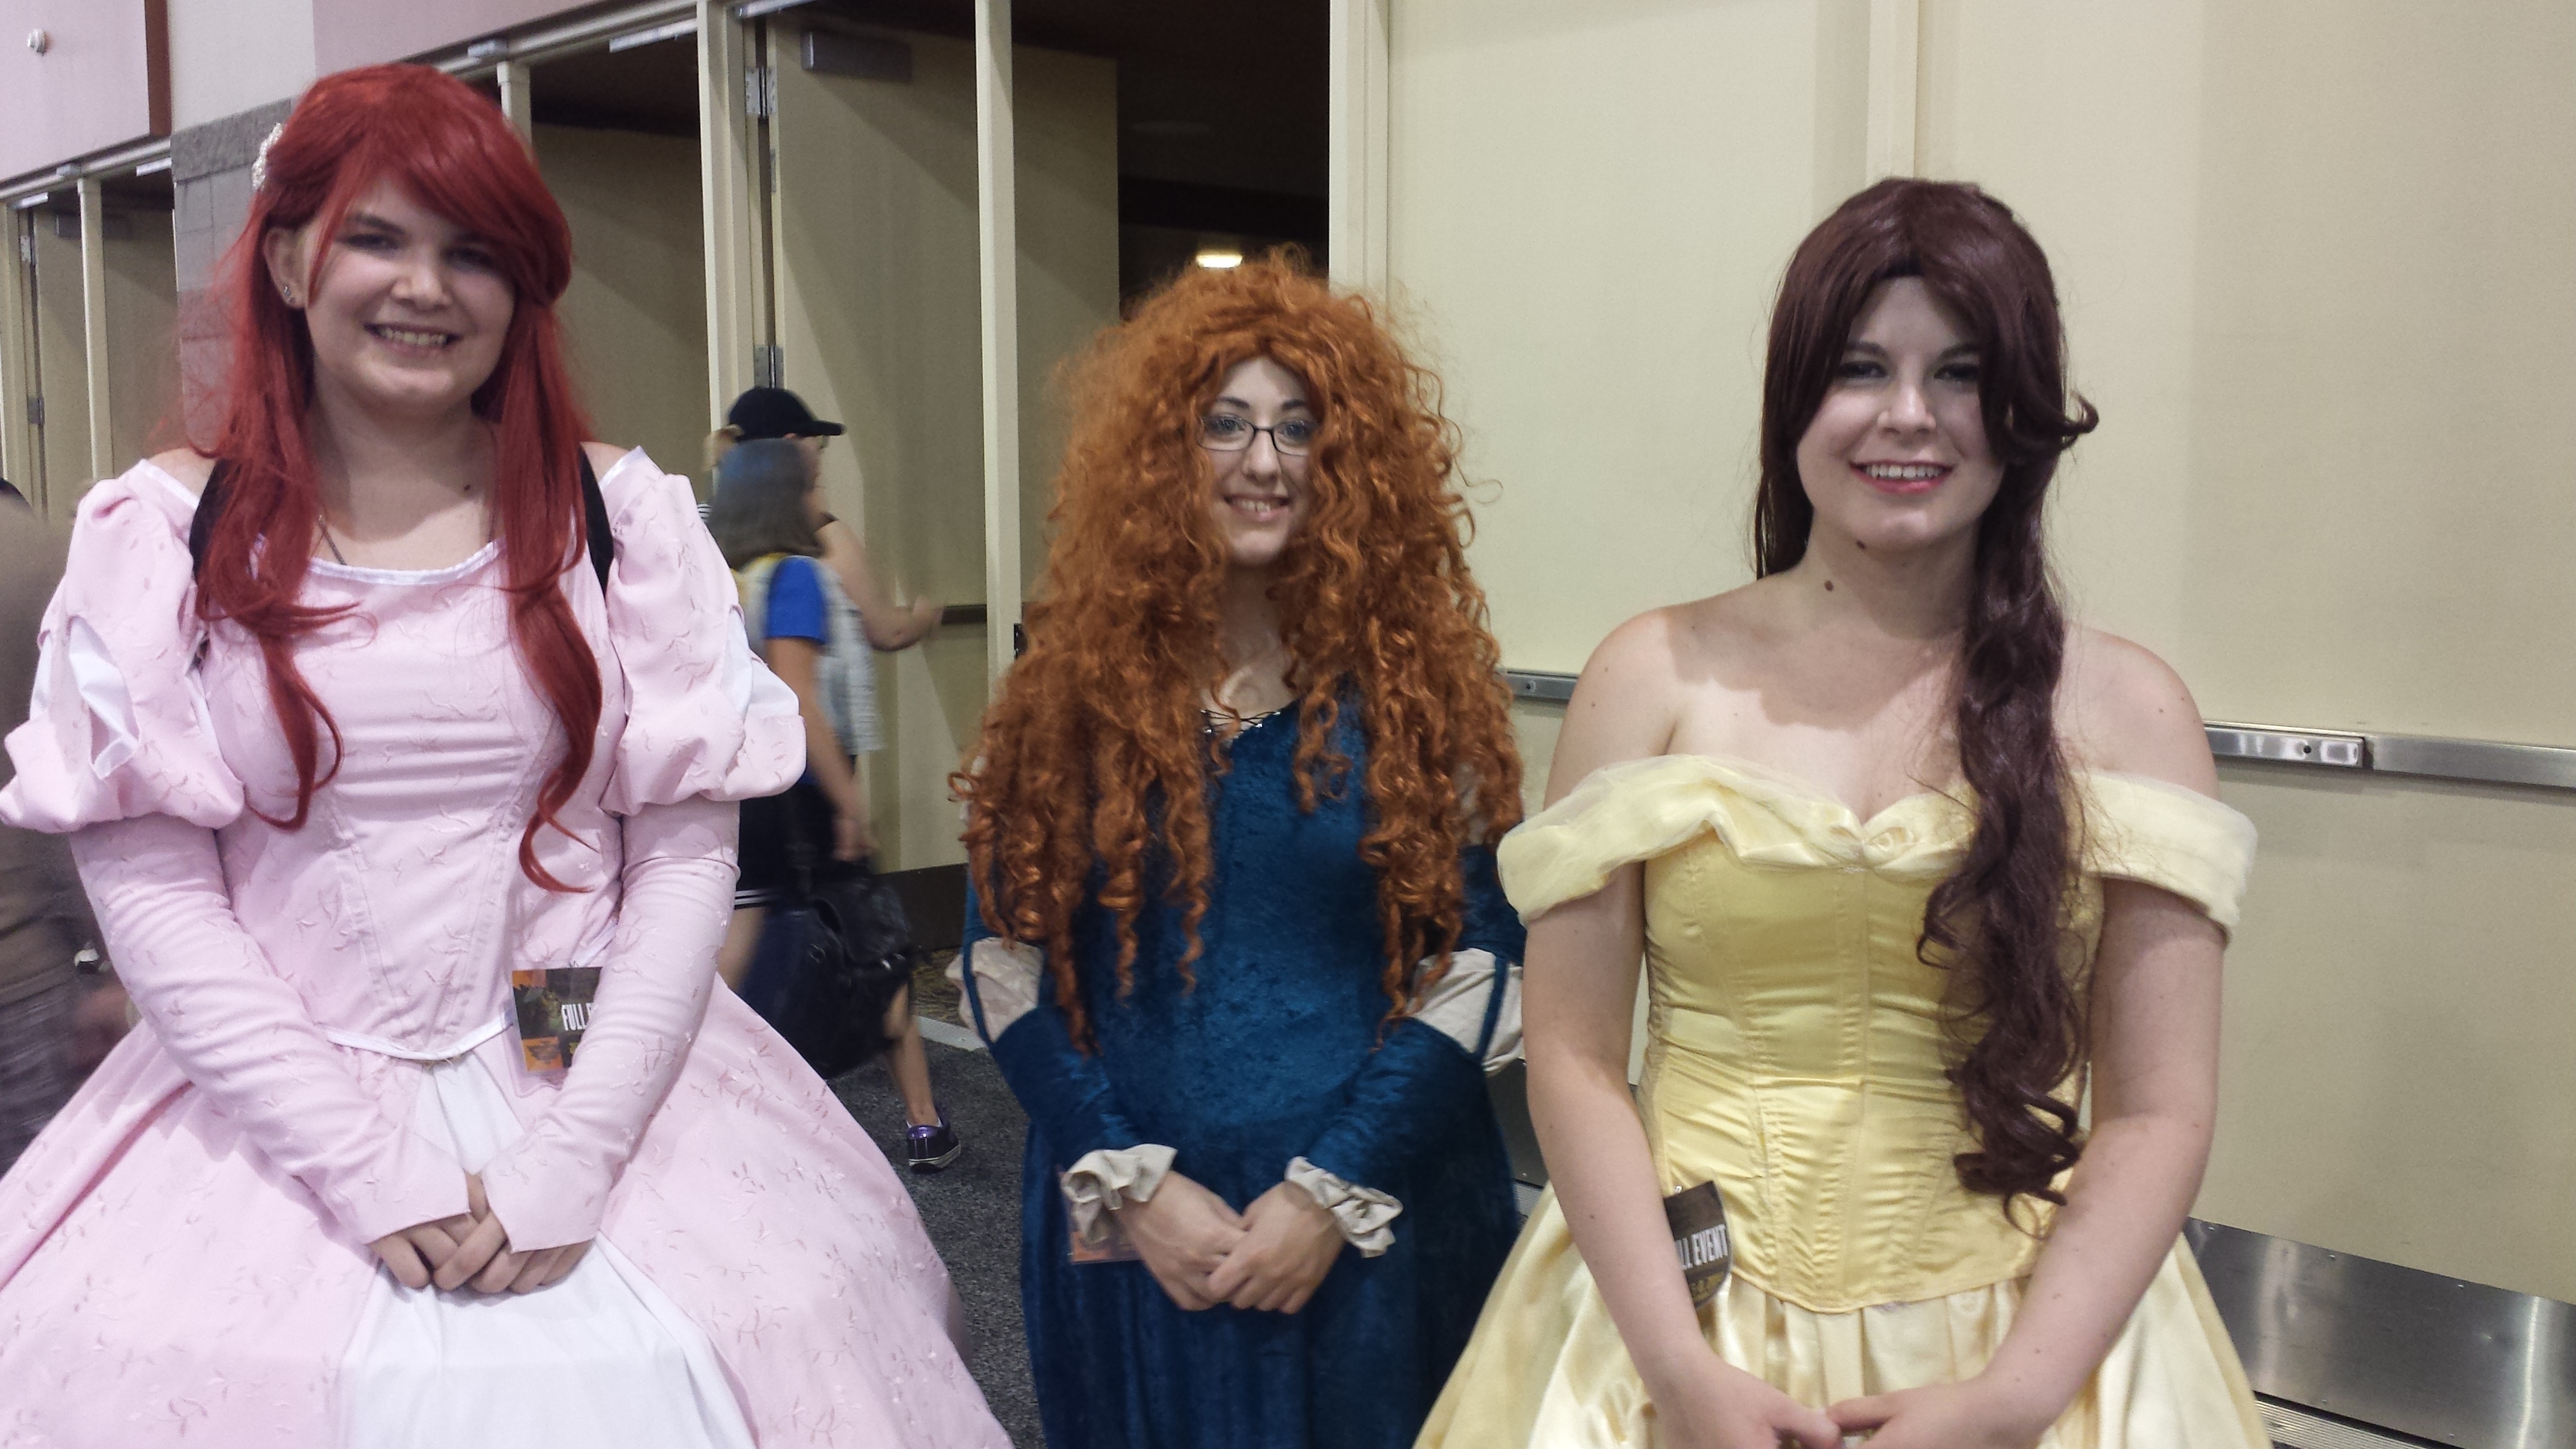 Ariel, Merida, Belle